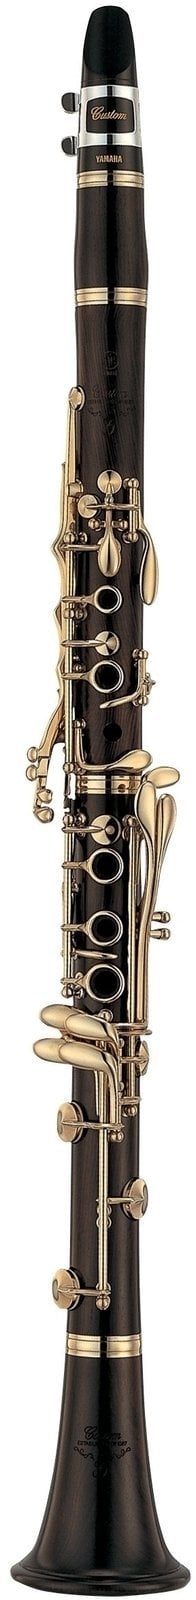 Yamaha YCL-CSG III H 02 Clarinet Si b